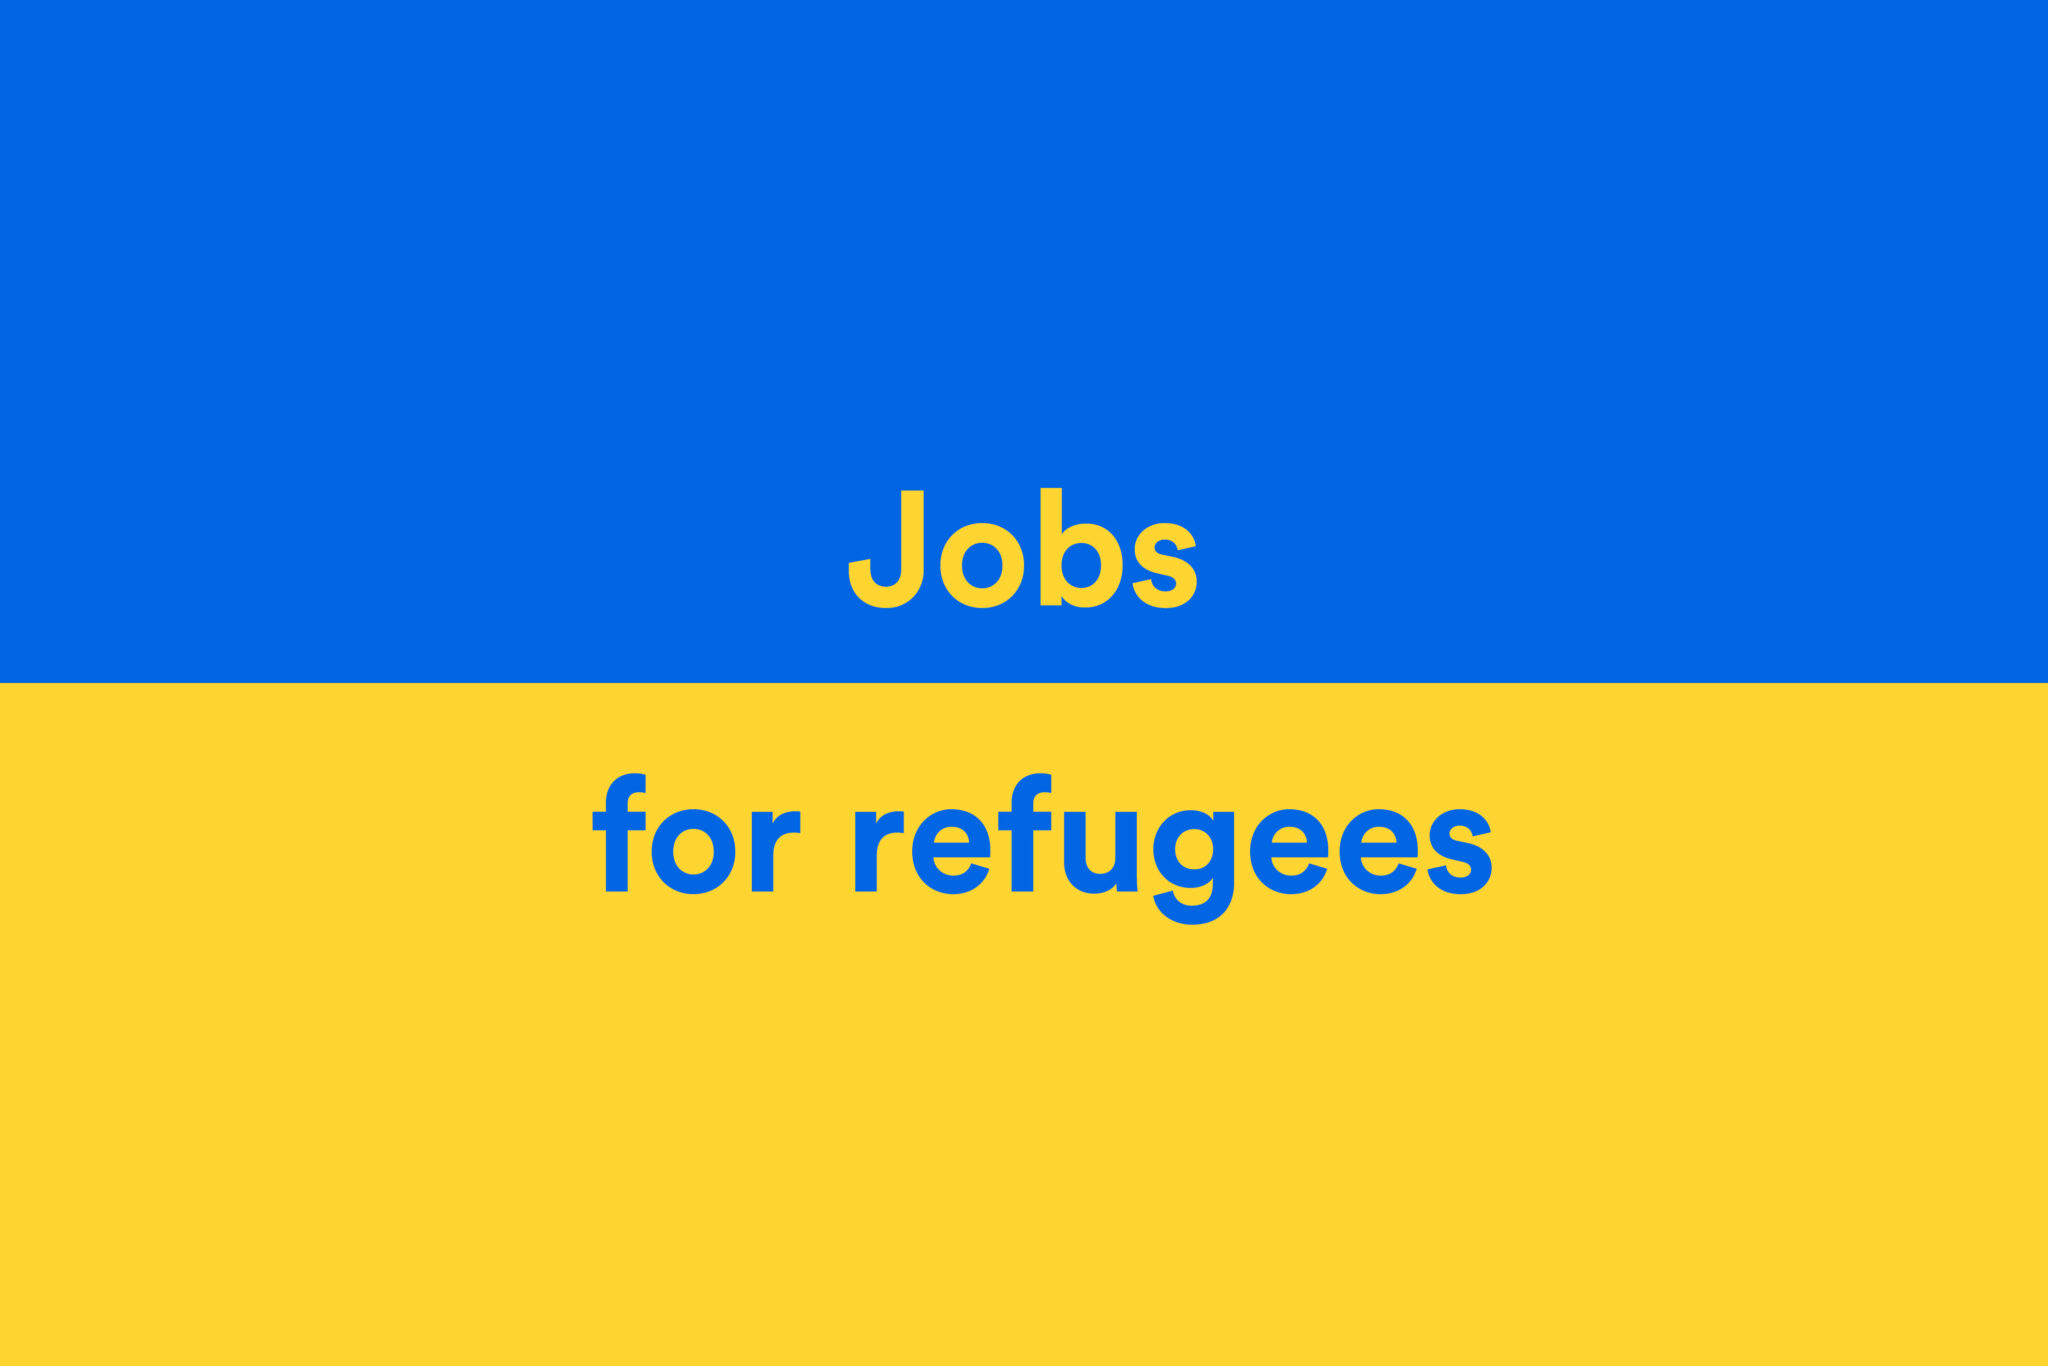 Ukraine_Jobs for refugees